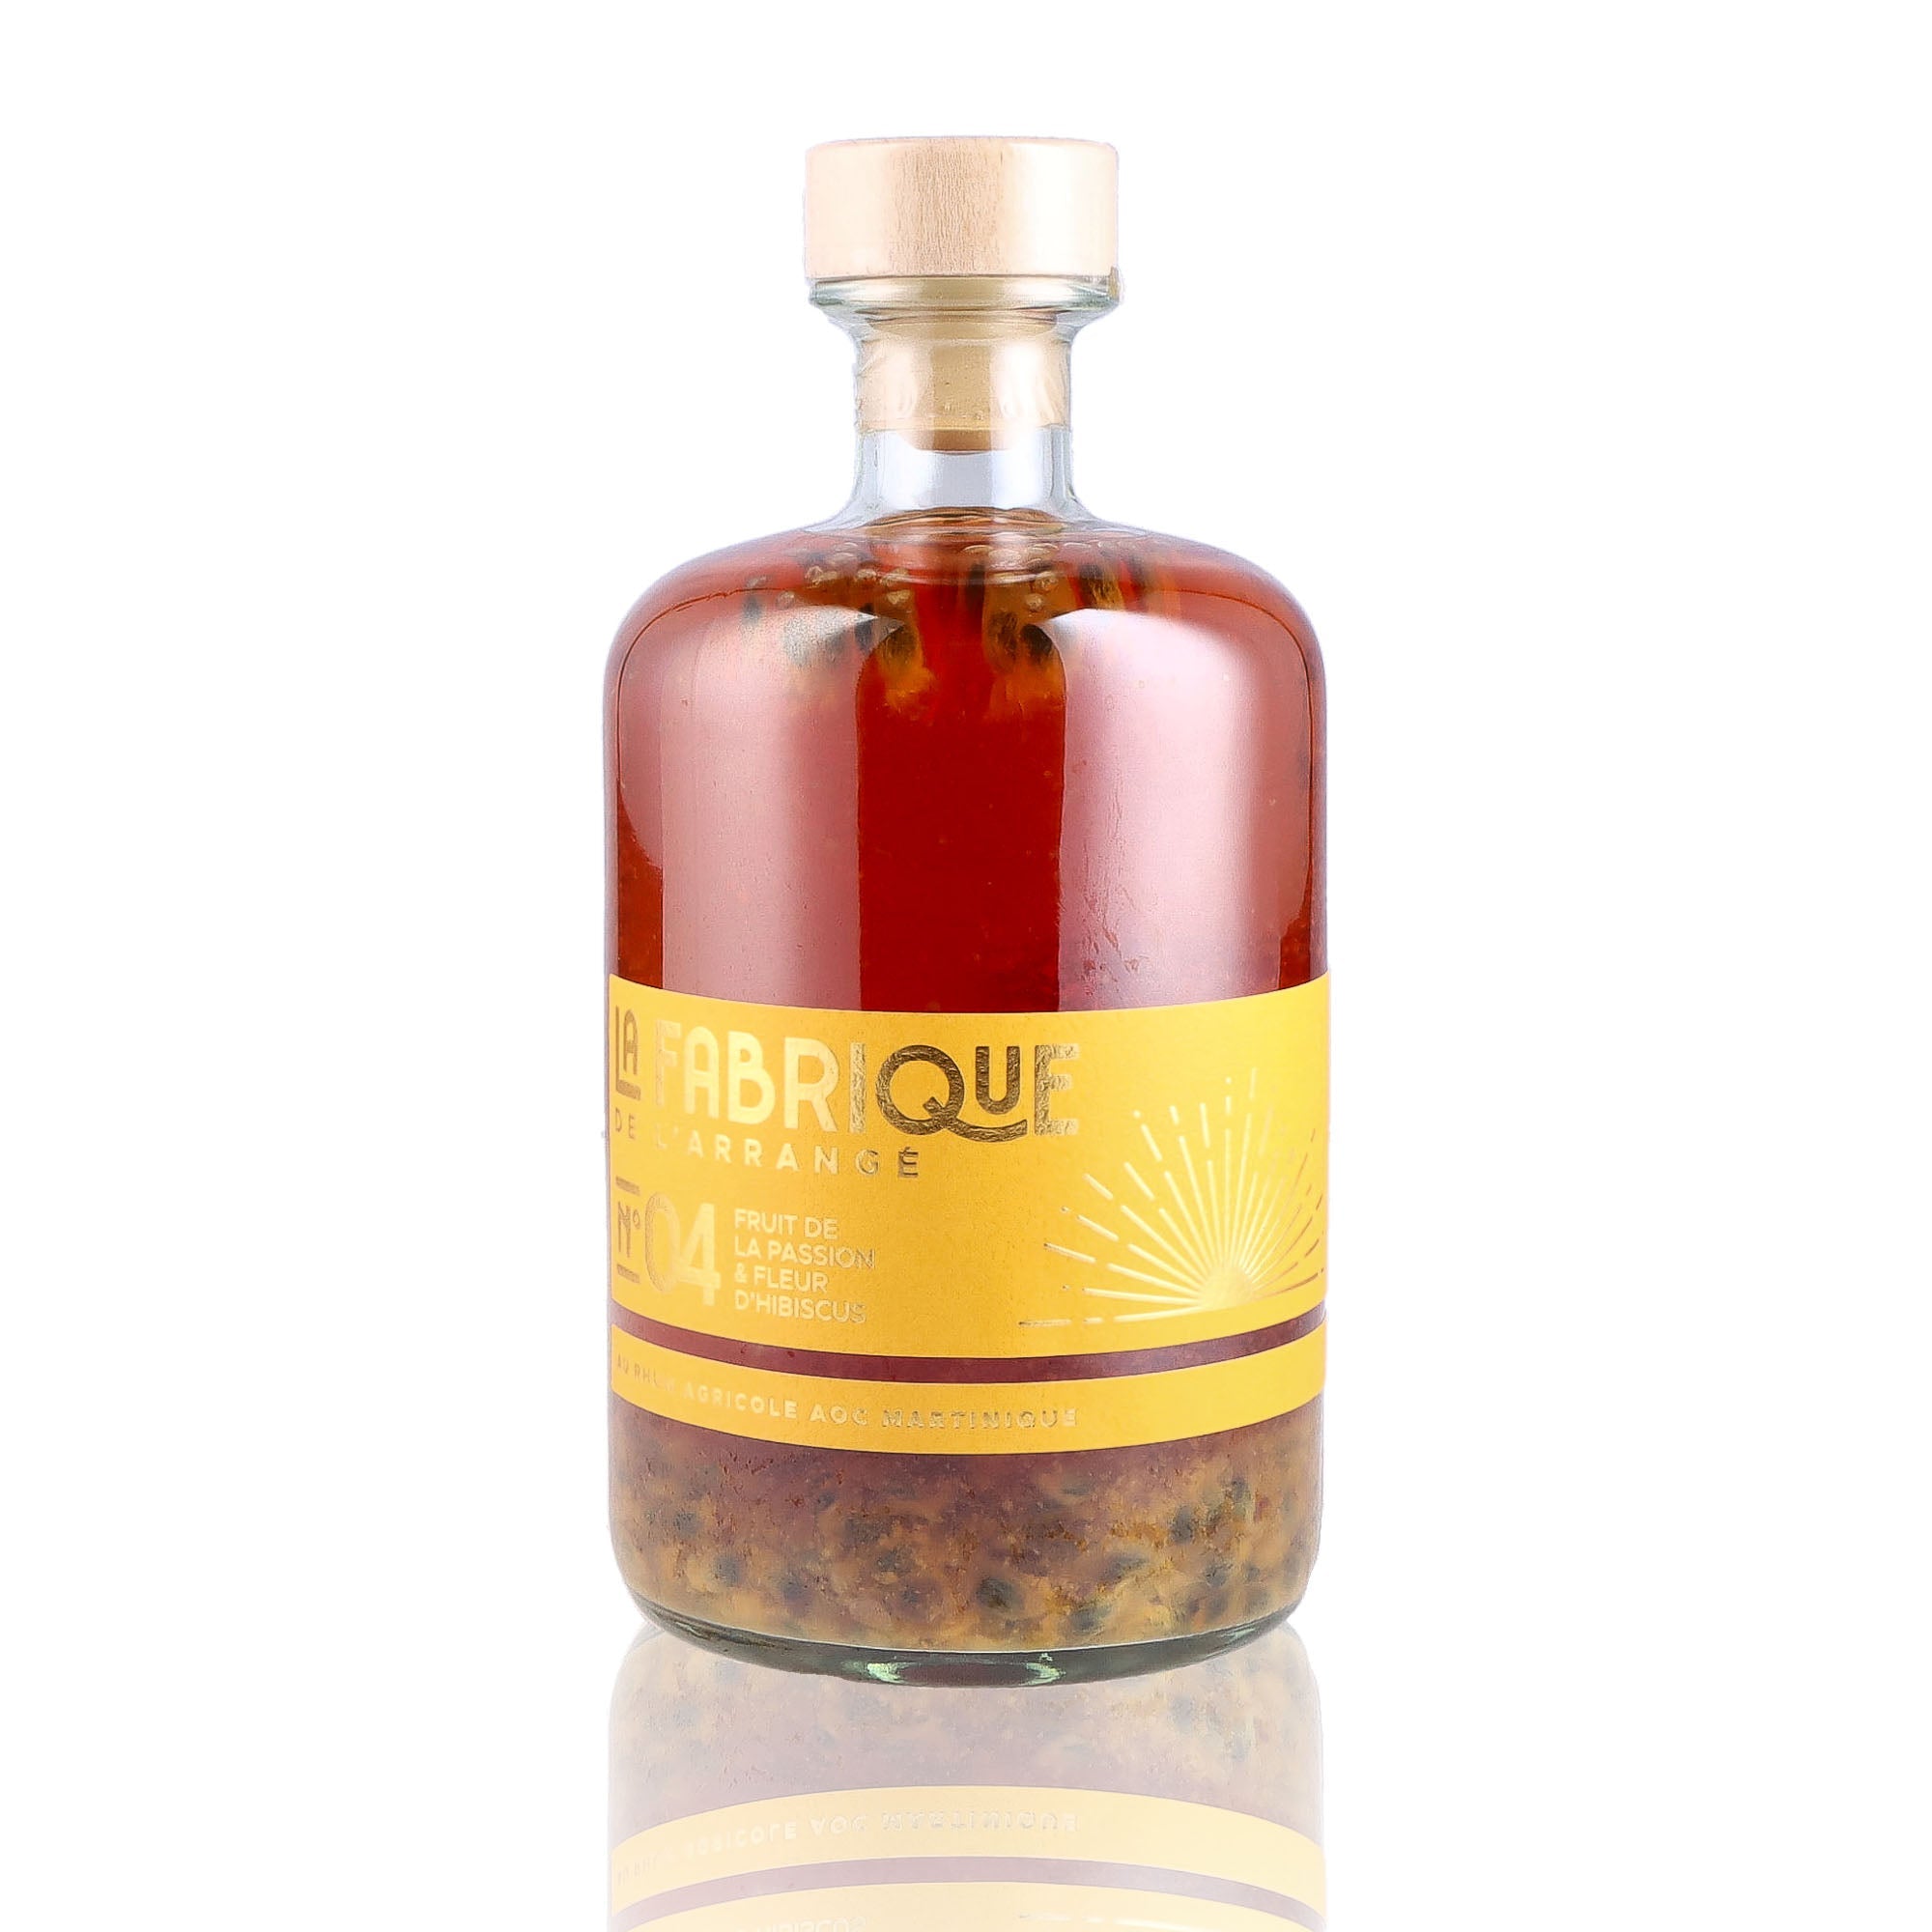 Une bouteille de Rhum Arrangé, de la marque La Fabrique de l'arrangé, nommée No 3 Ananas Passion Hibiscus.